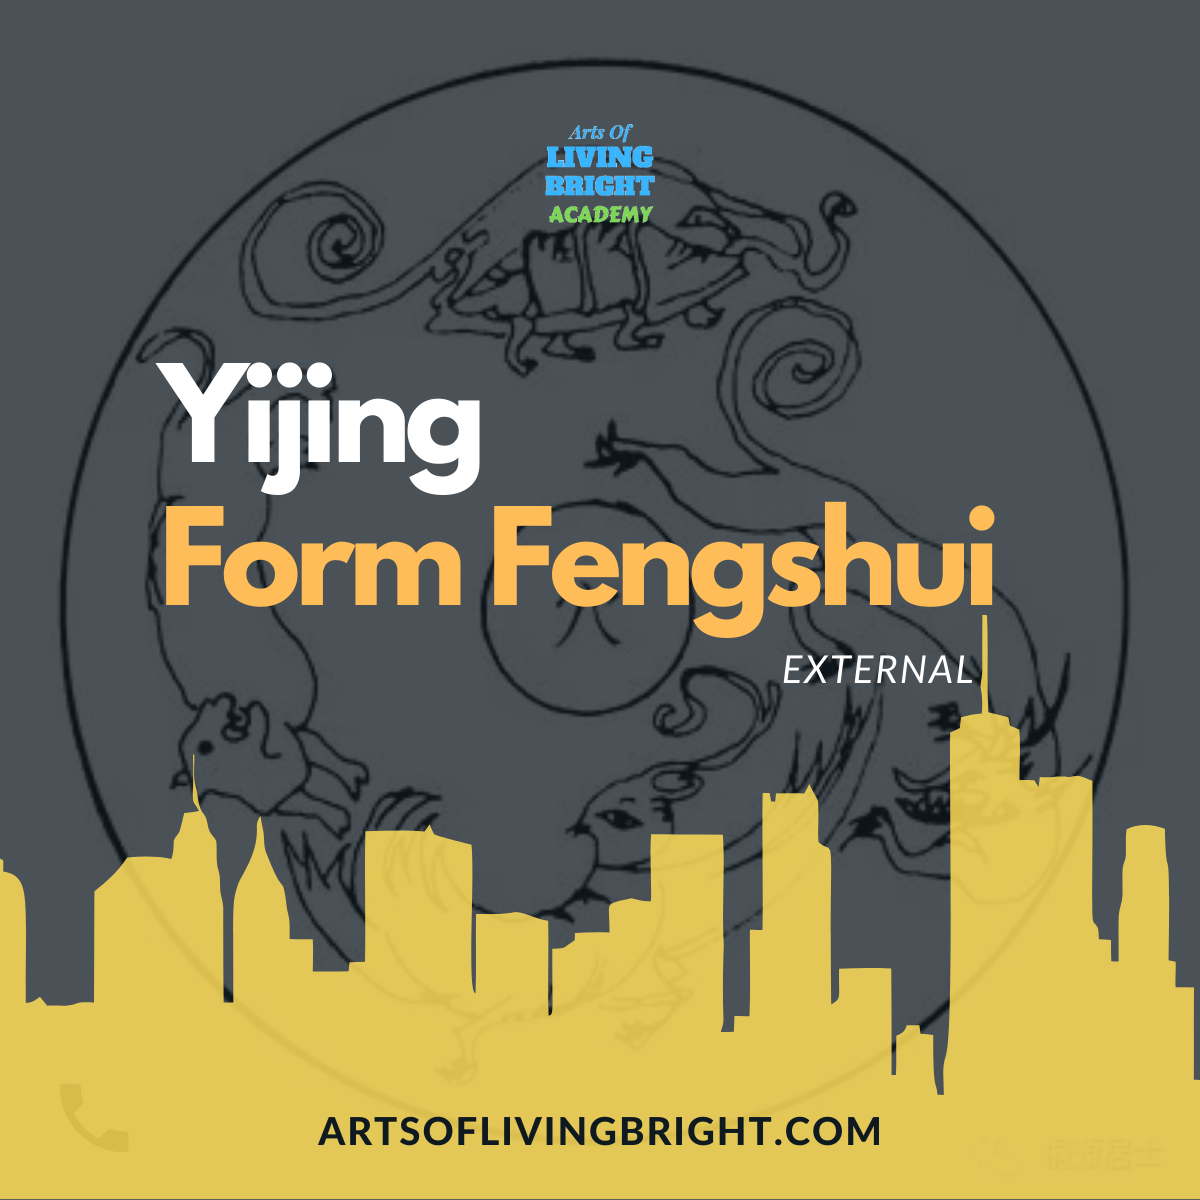 Yijing Form Fengshui External